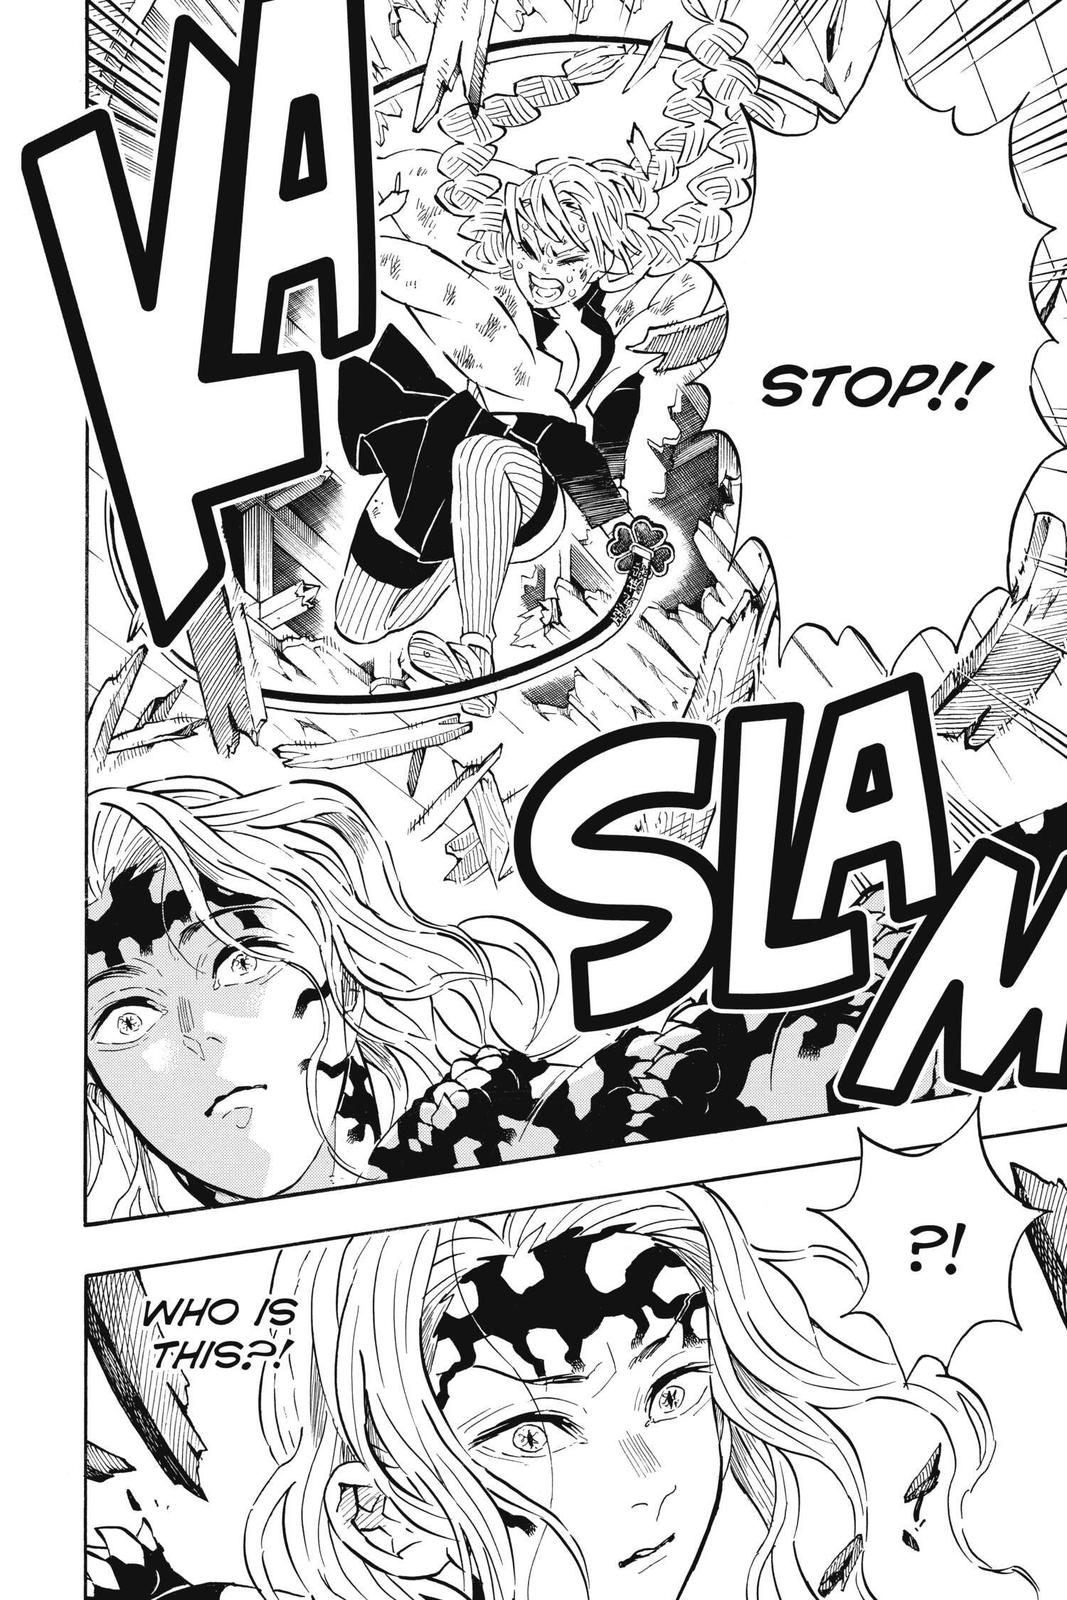 Demon Slayer Manga Manga Chapter - 182 - image 10